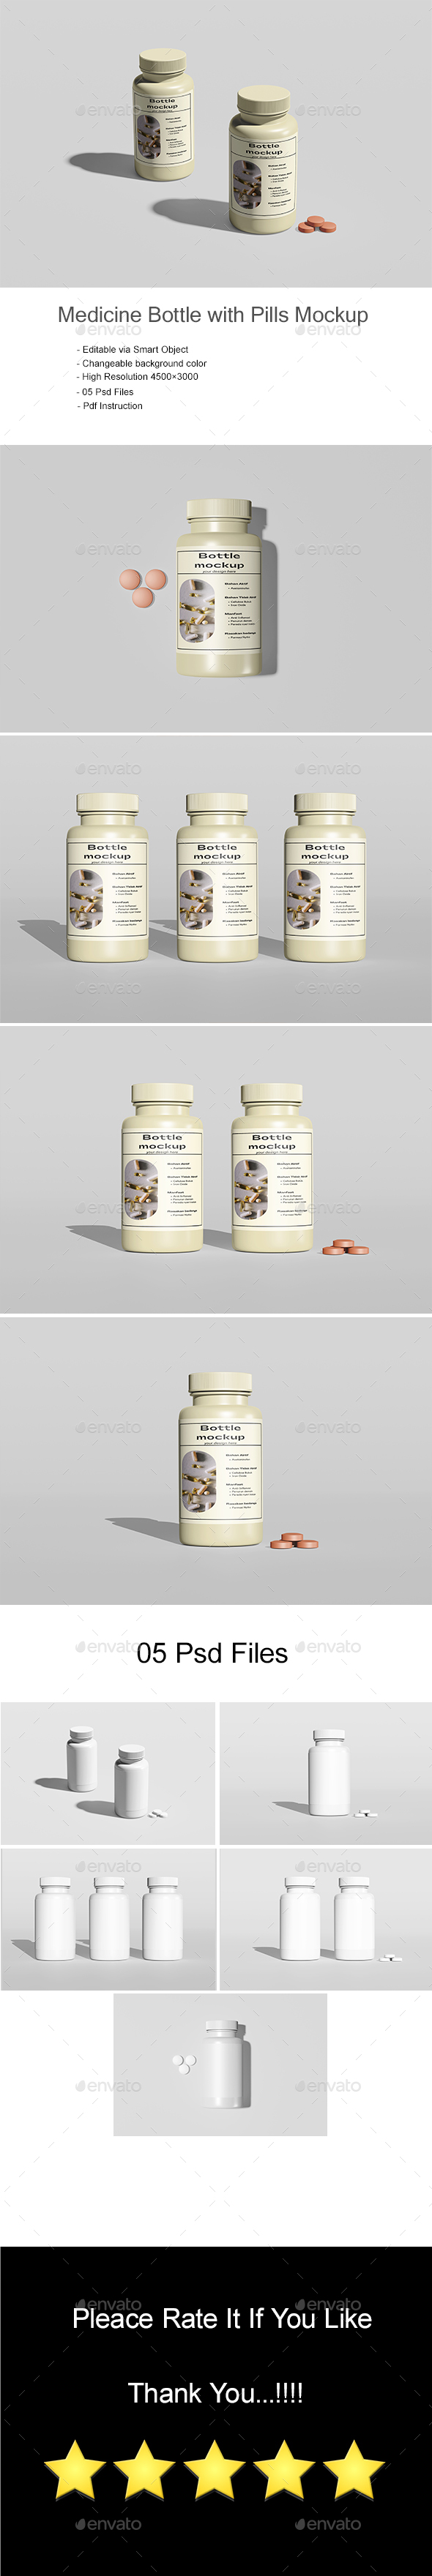 [DOWNLOAD]Medicine Bottle with Pills Mockup